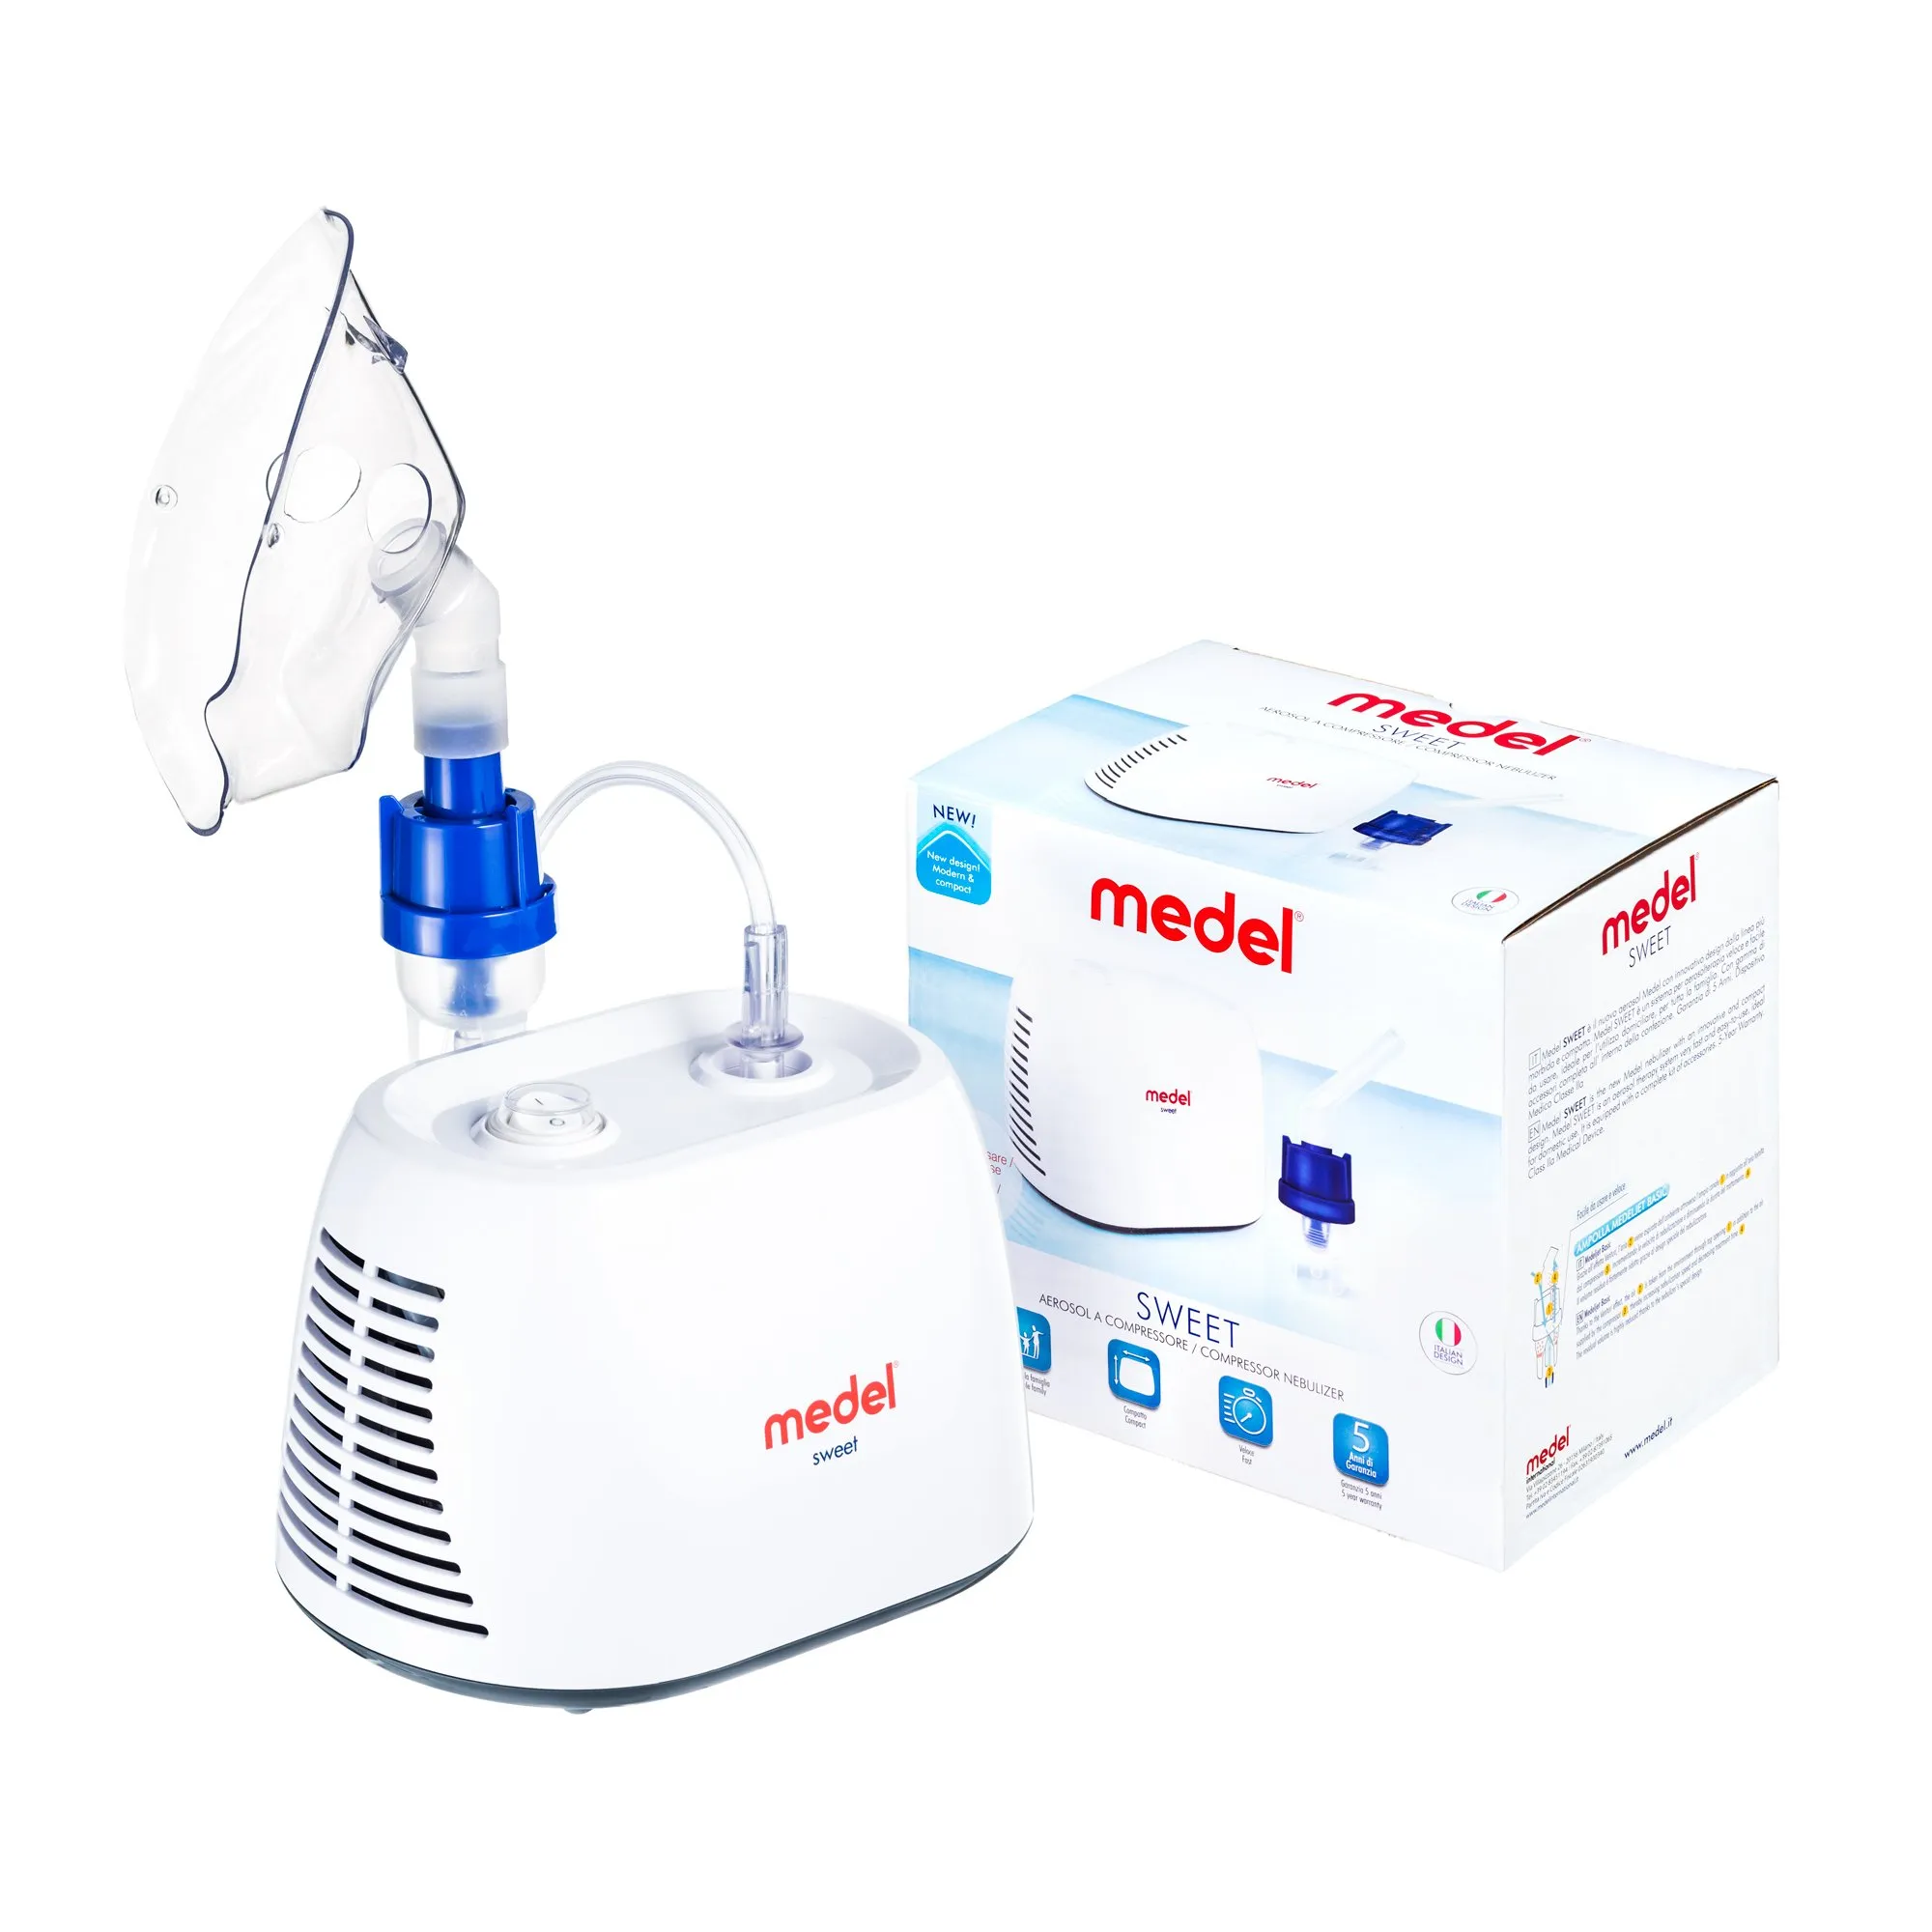 Medel Sweet, inhalator kompresorowy 